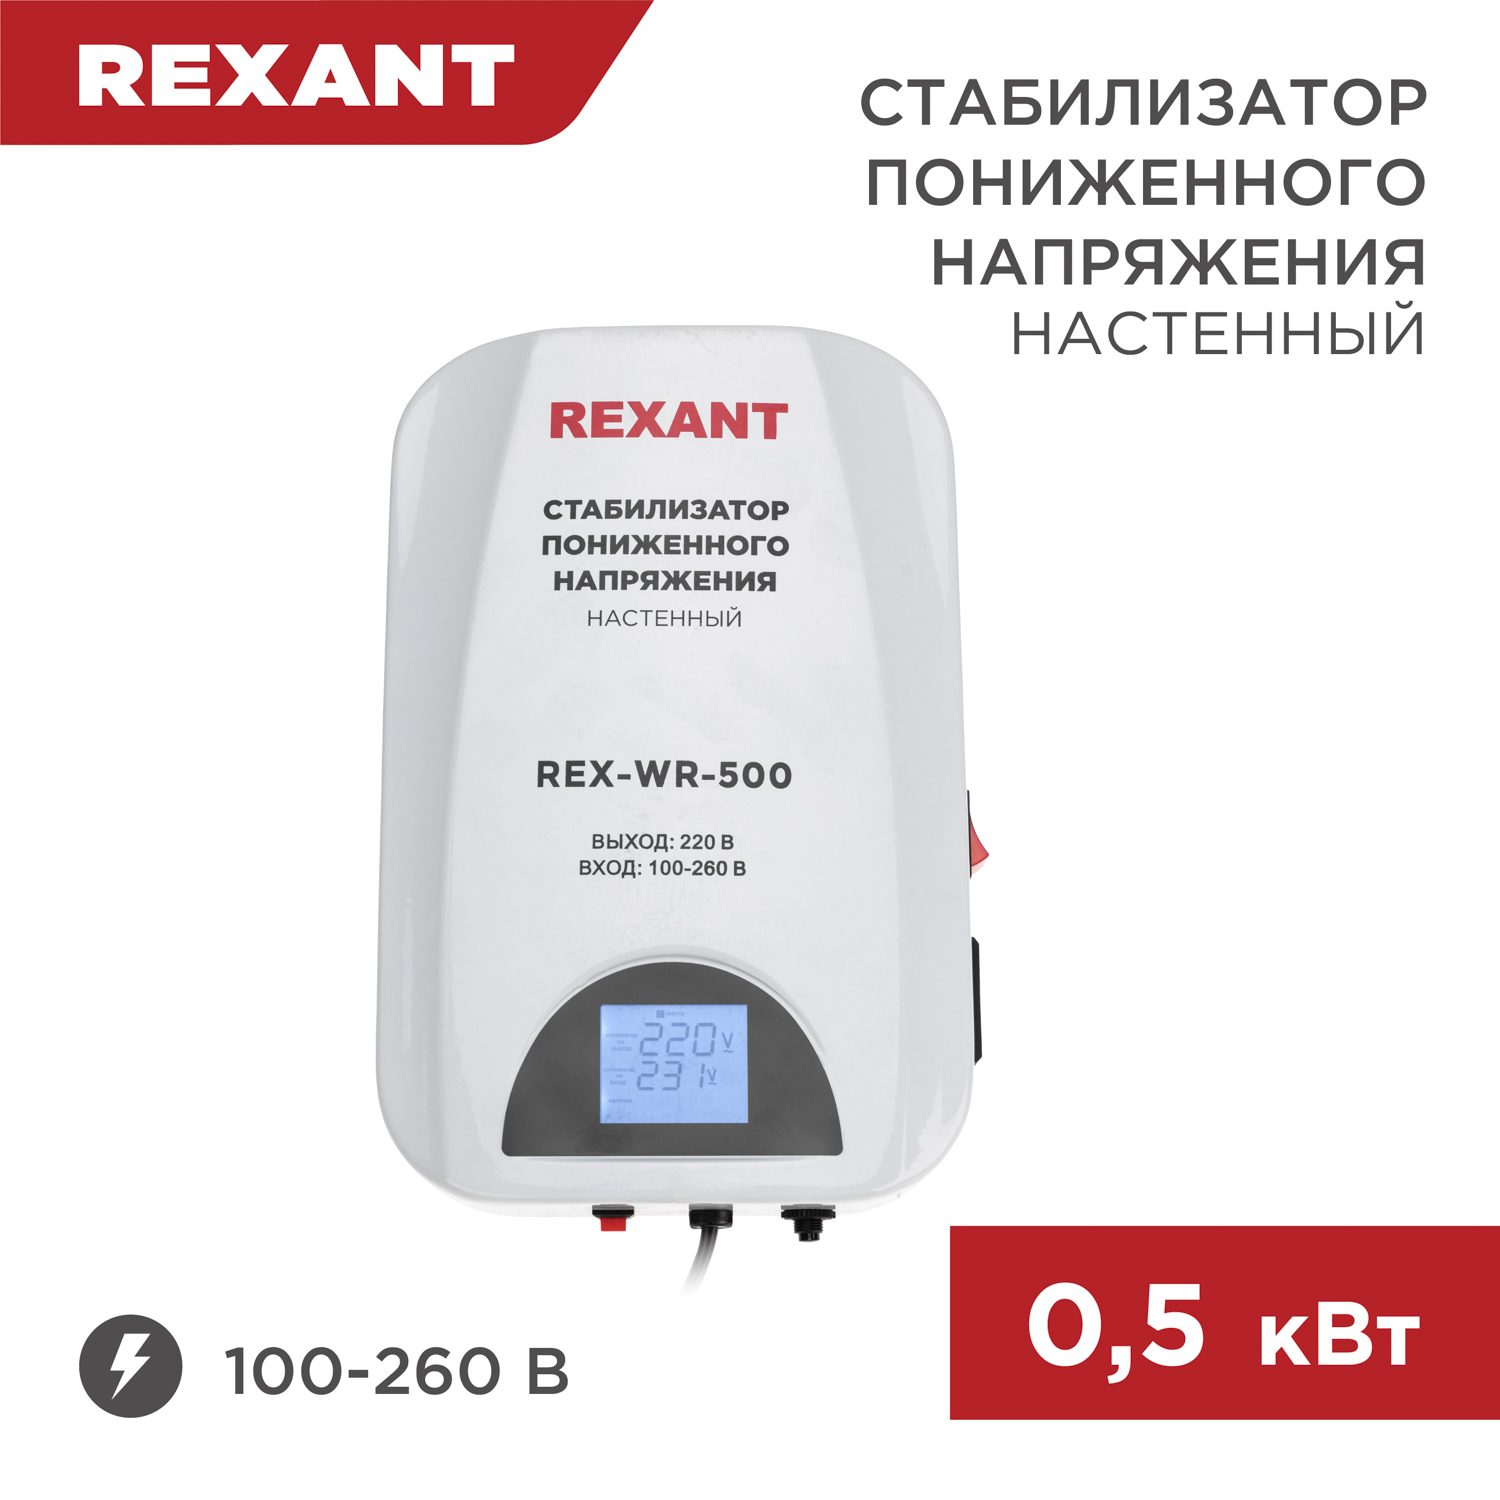 Стабилизатор пониженного напряжения настенный REXANT REX-WR-500 11-5041